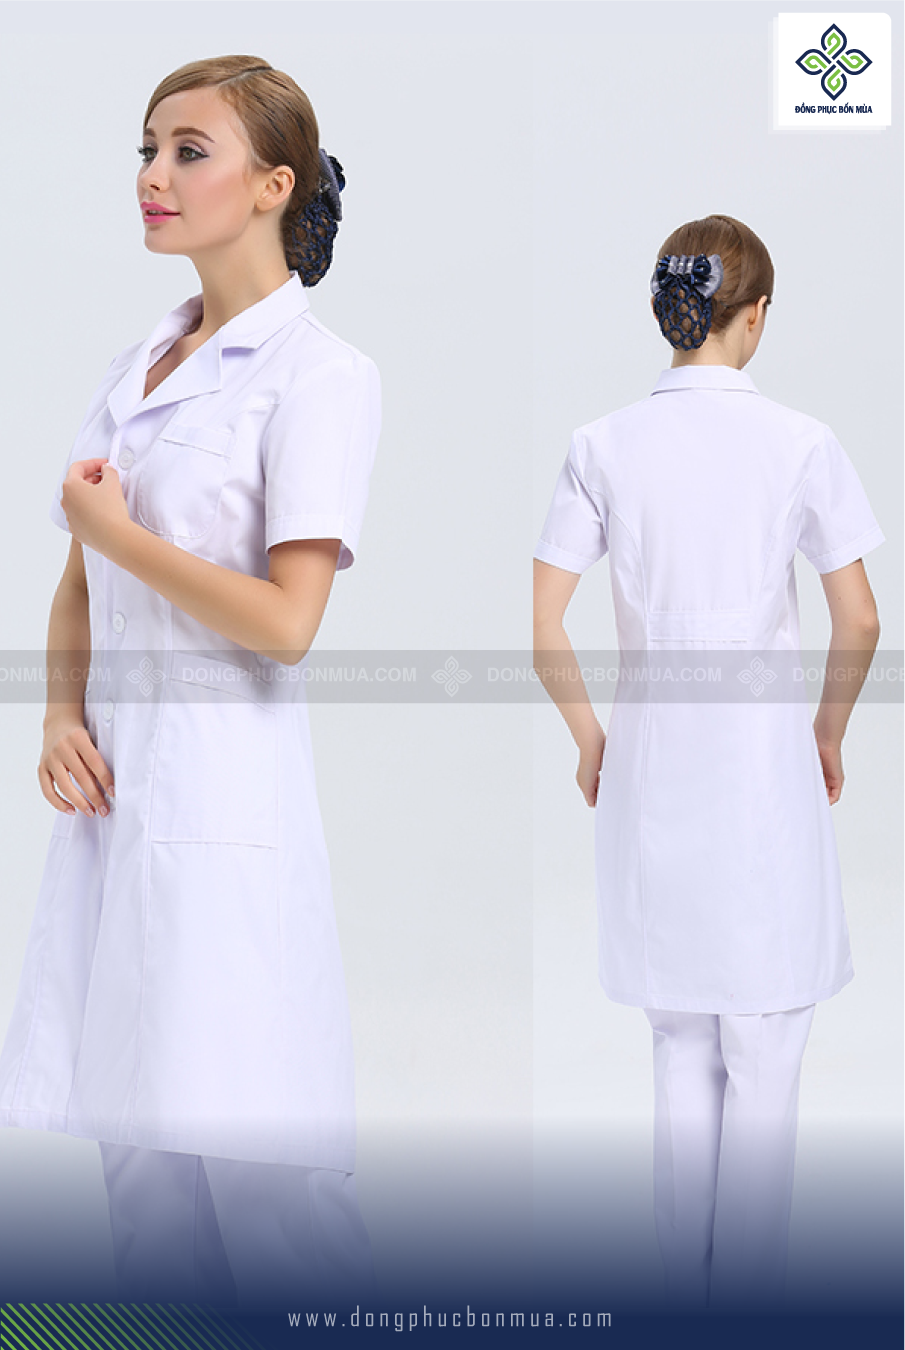 Xưởng may đồng phục áo blouse bệnh viện cho y bác sĩ, giá: liên hệ, gọi:  0938 988 777, Tứ Kỳ - Hải Dương, sp3924